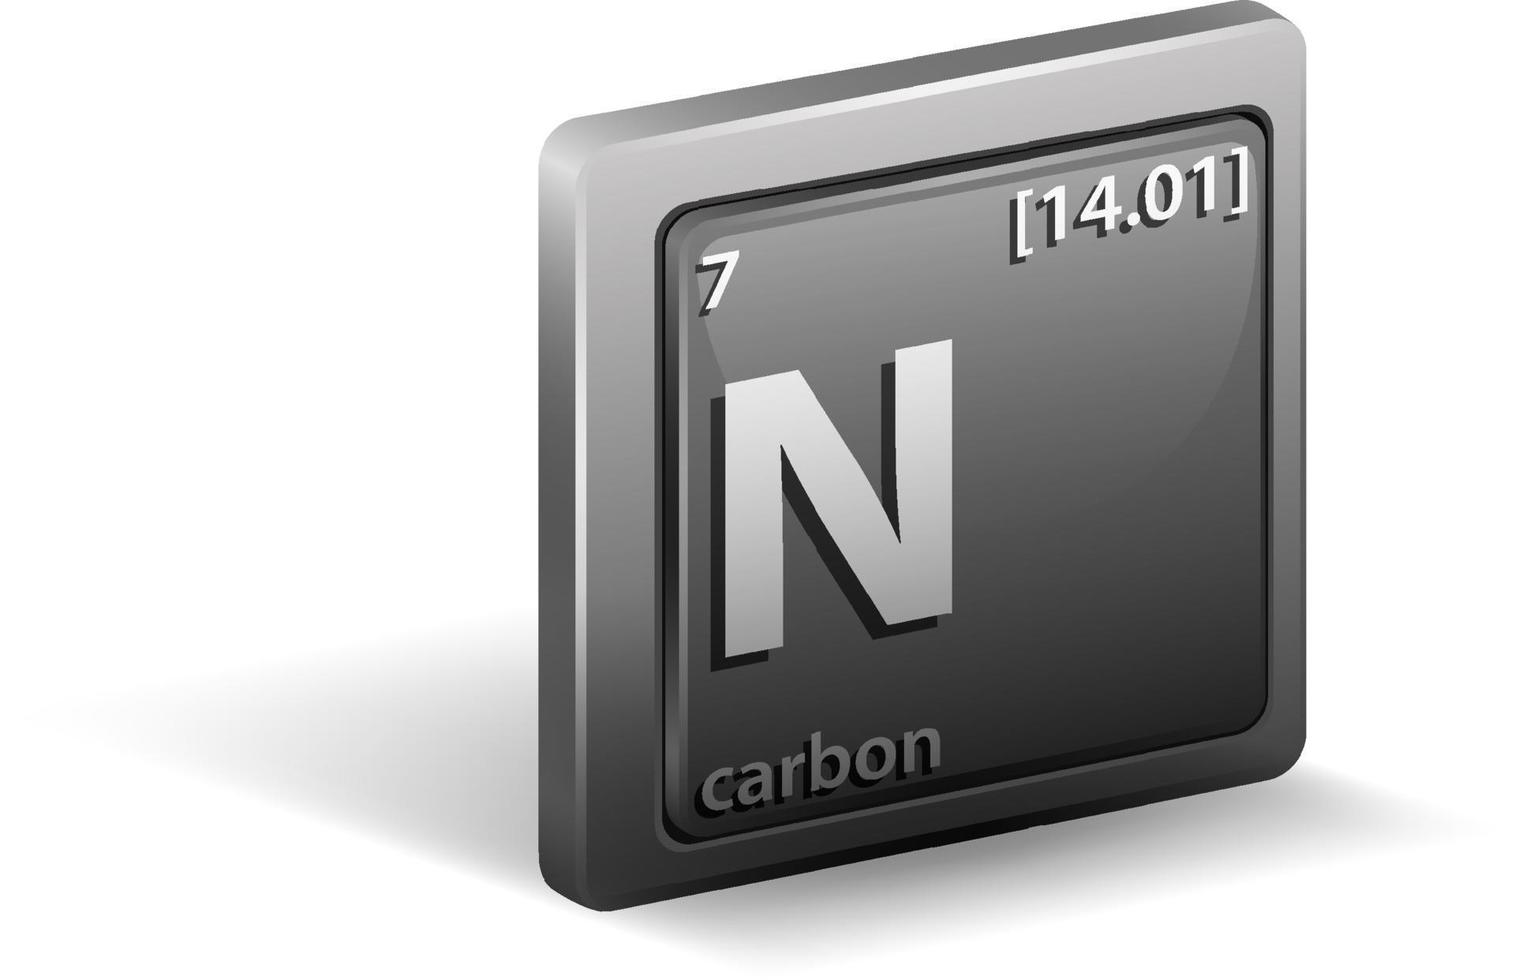 élément chimique de carbone. symbole chimique avec numéro atomique et masse atomique. vecteur